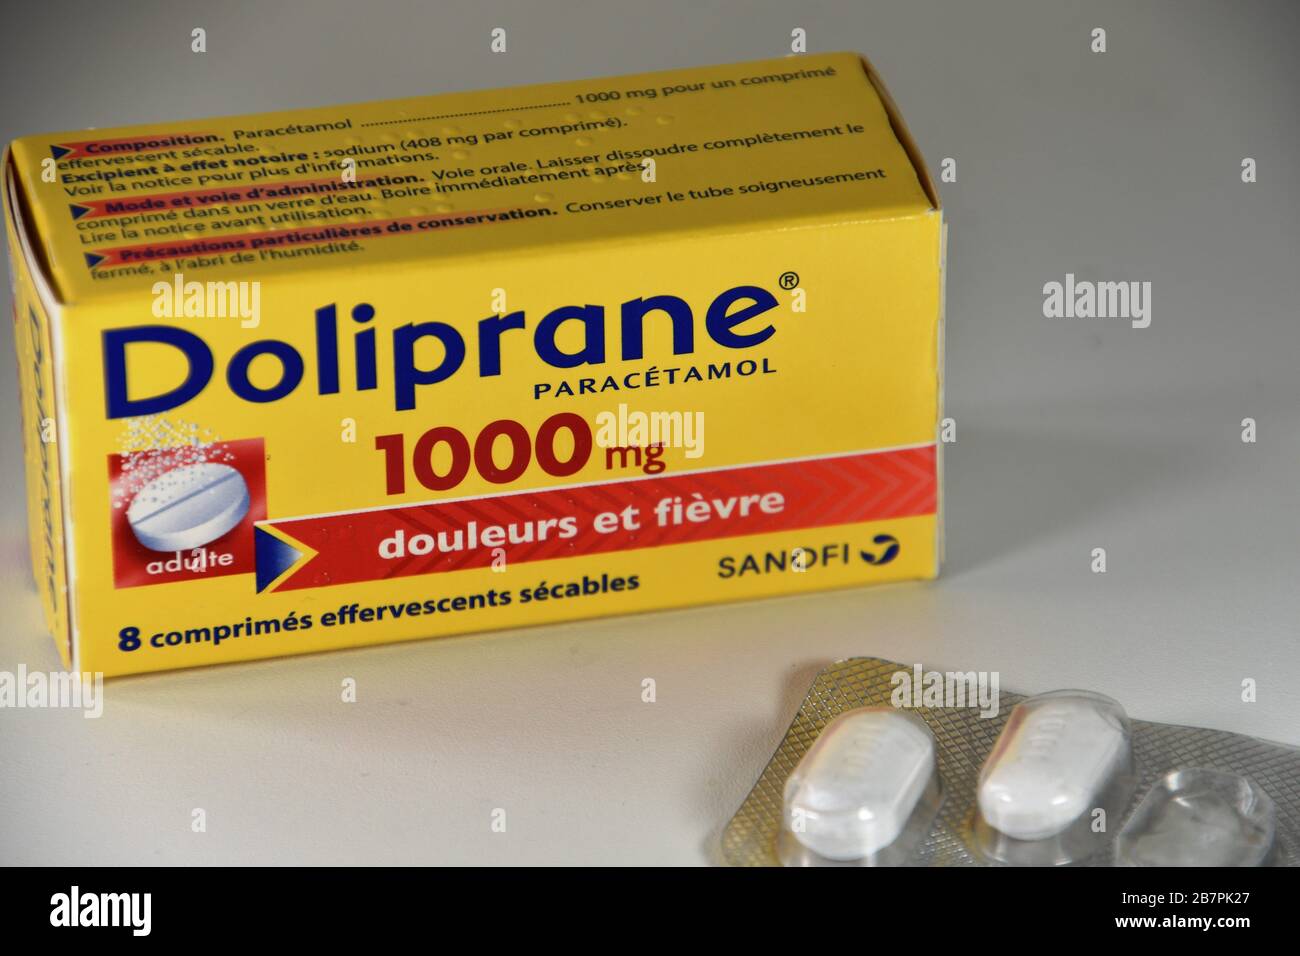 Paracetamol box immagini e fotografie stock ad alta risoluzione - Alamy